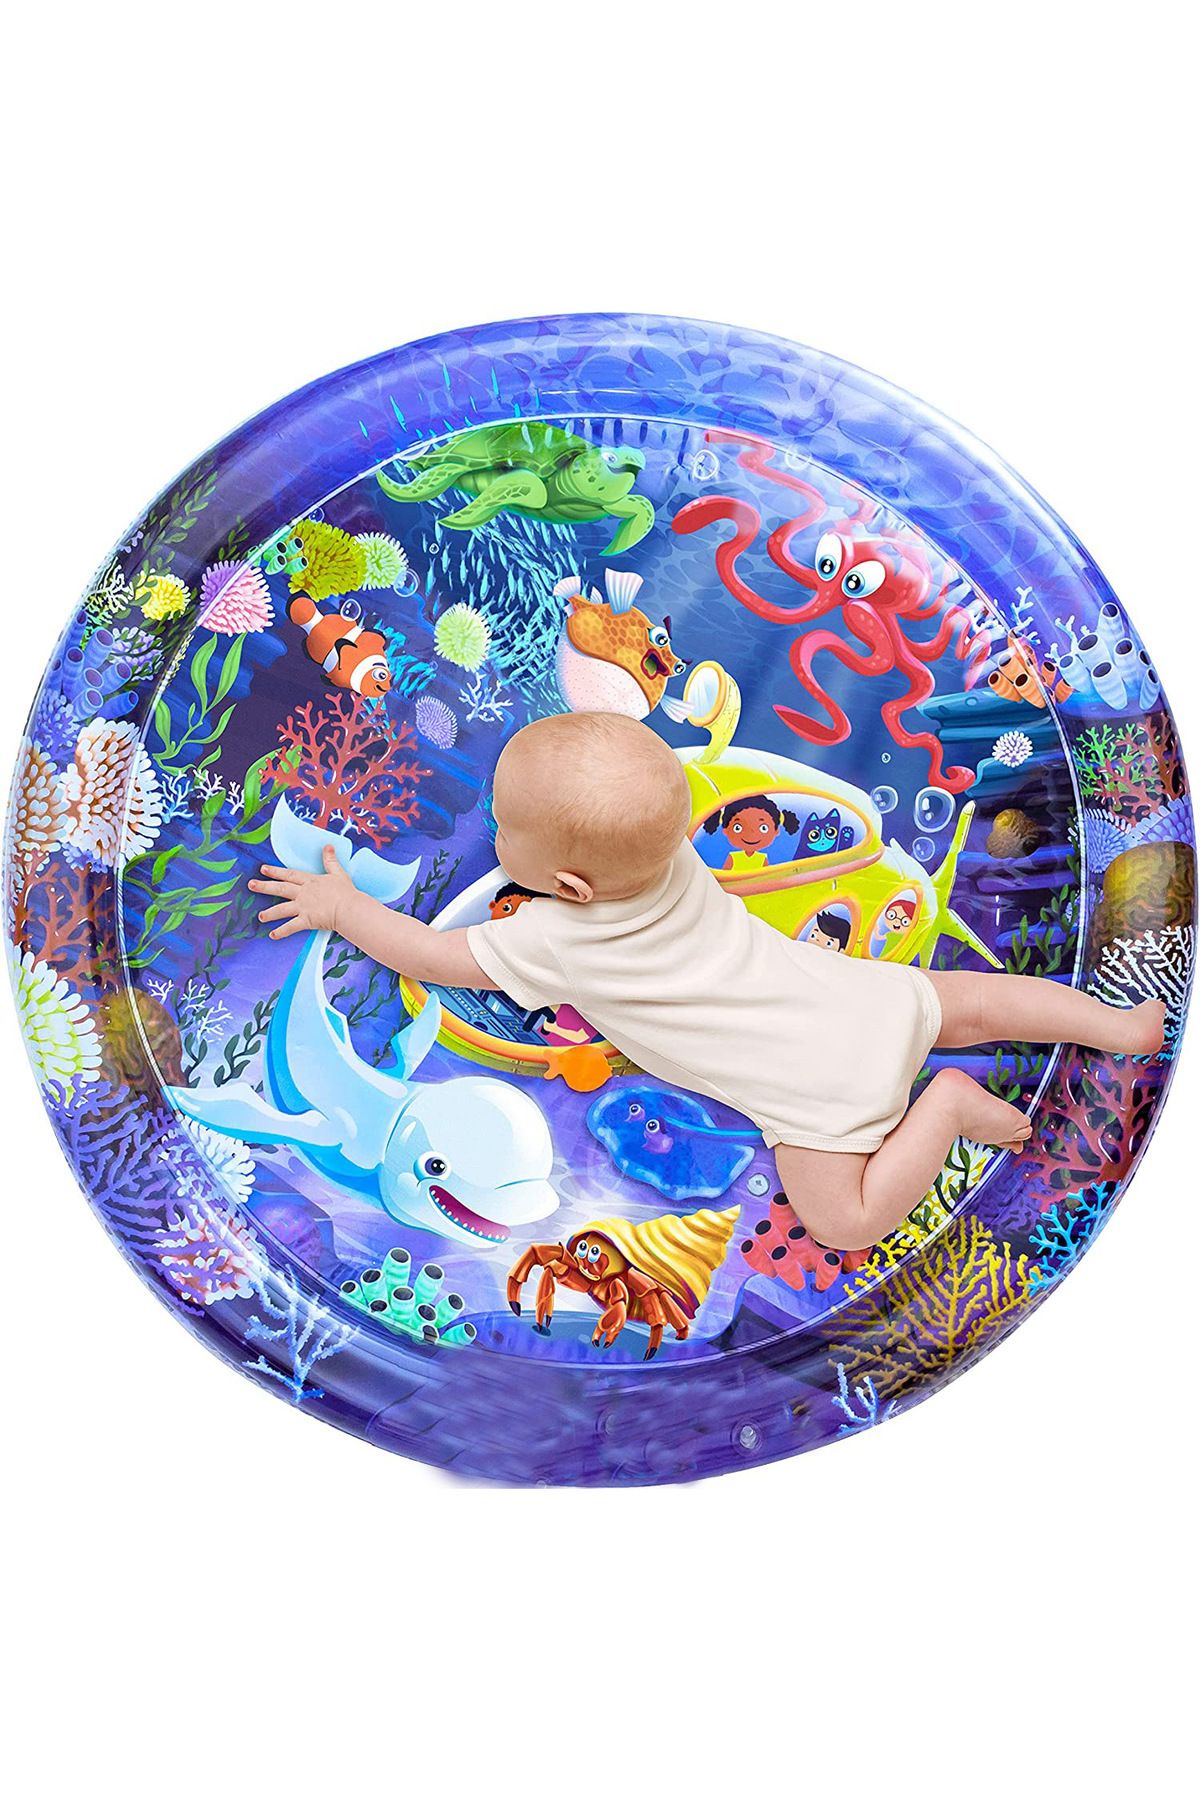 hitteknoloji Oval Bebek Su Oyun Matı Tummy Time 60 Cm Yuvarlak Su Matı